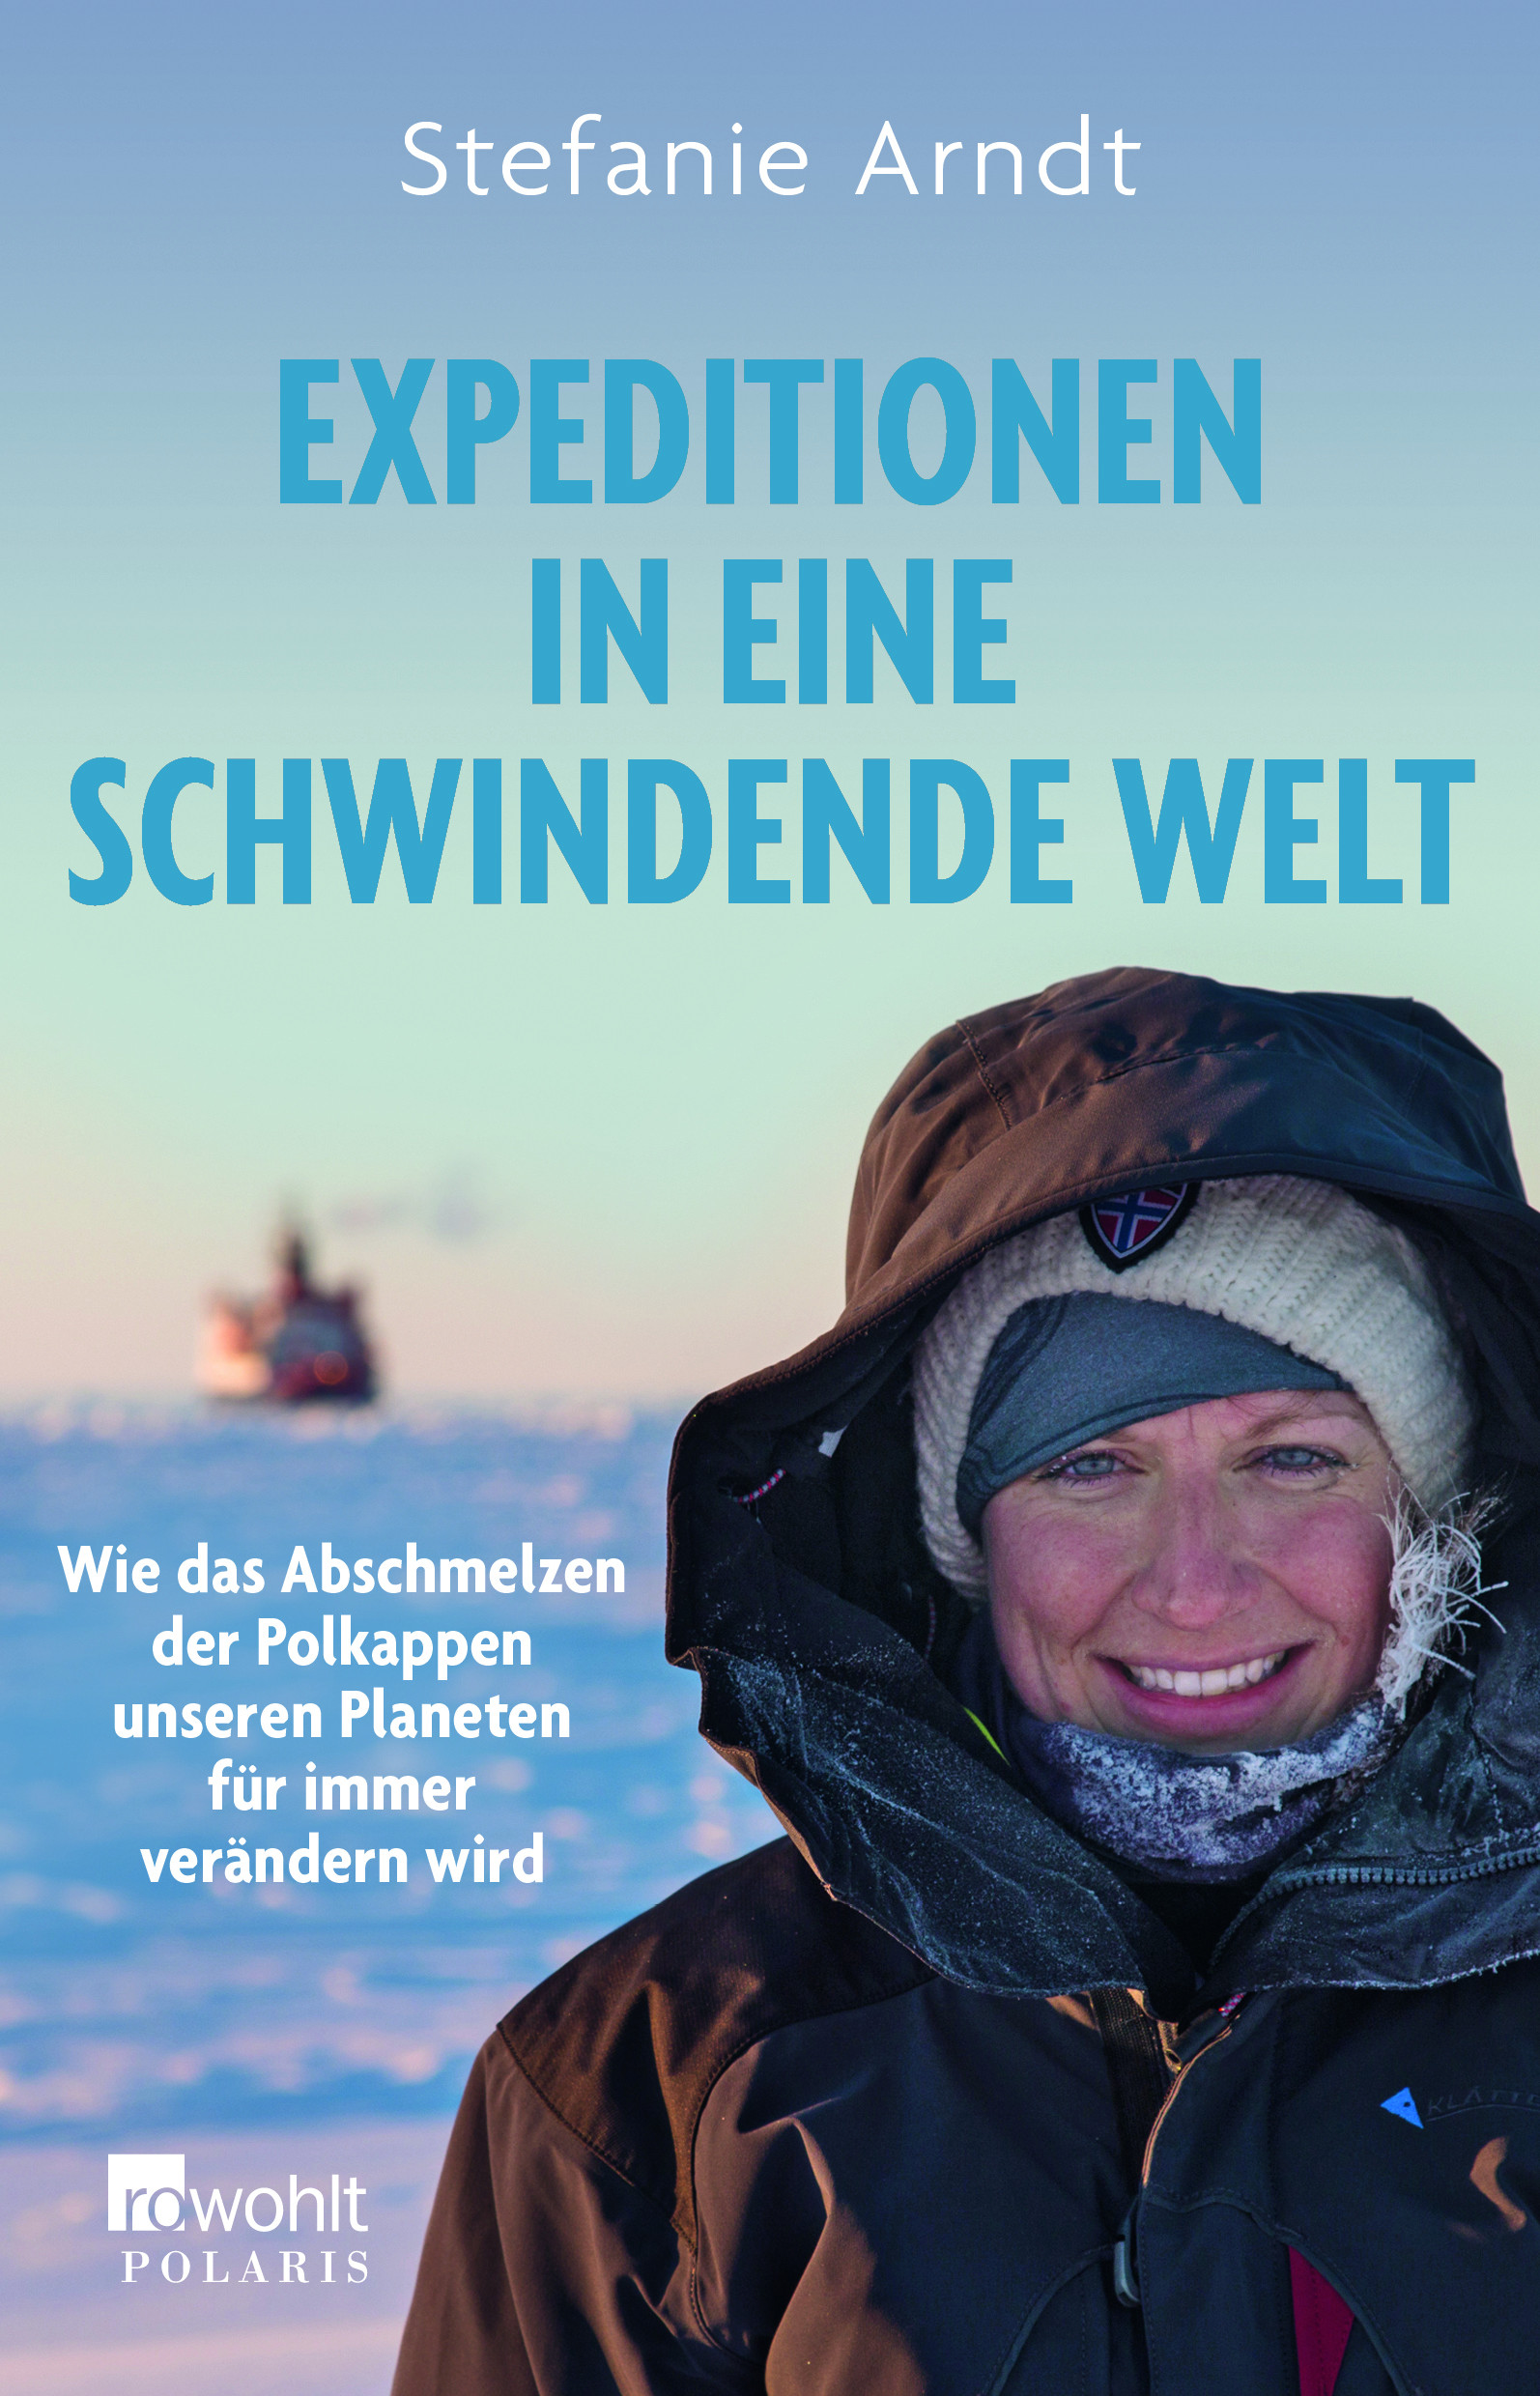 Buchcover mit Stefanie Arndt in warmer Kleidung, im Hintergrund ein Schiff.